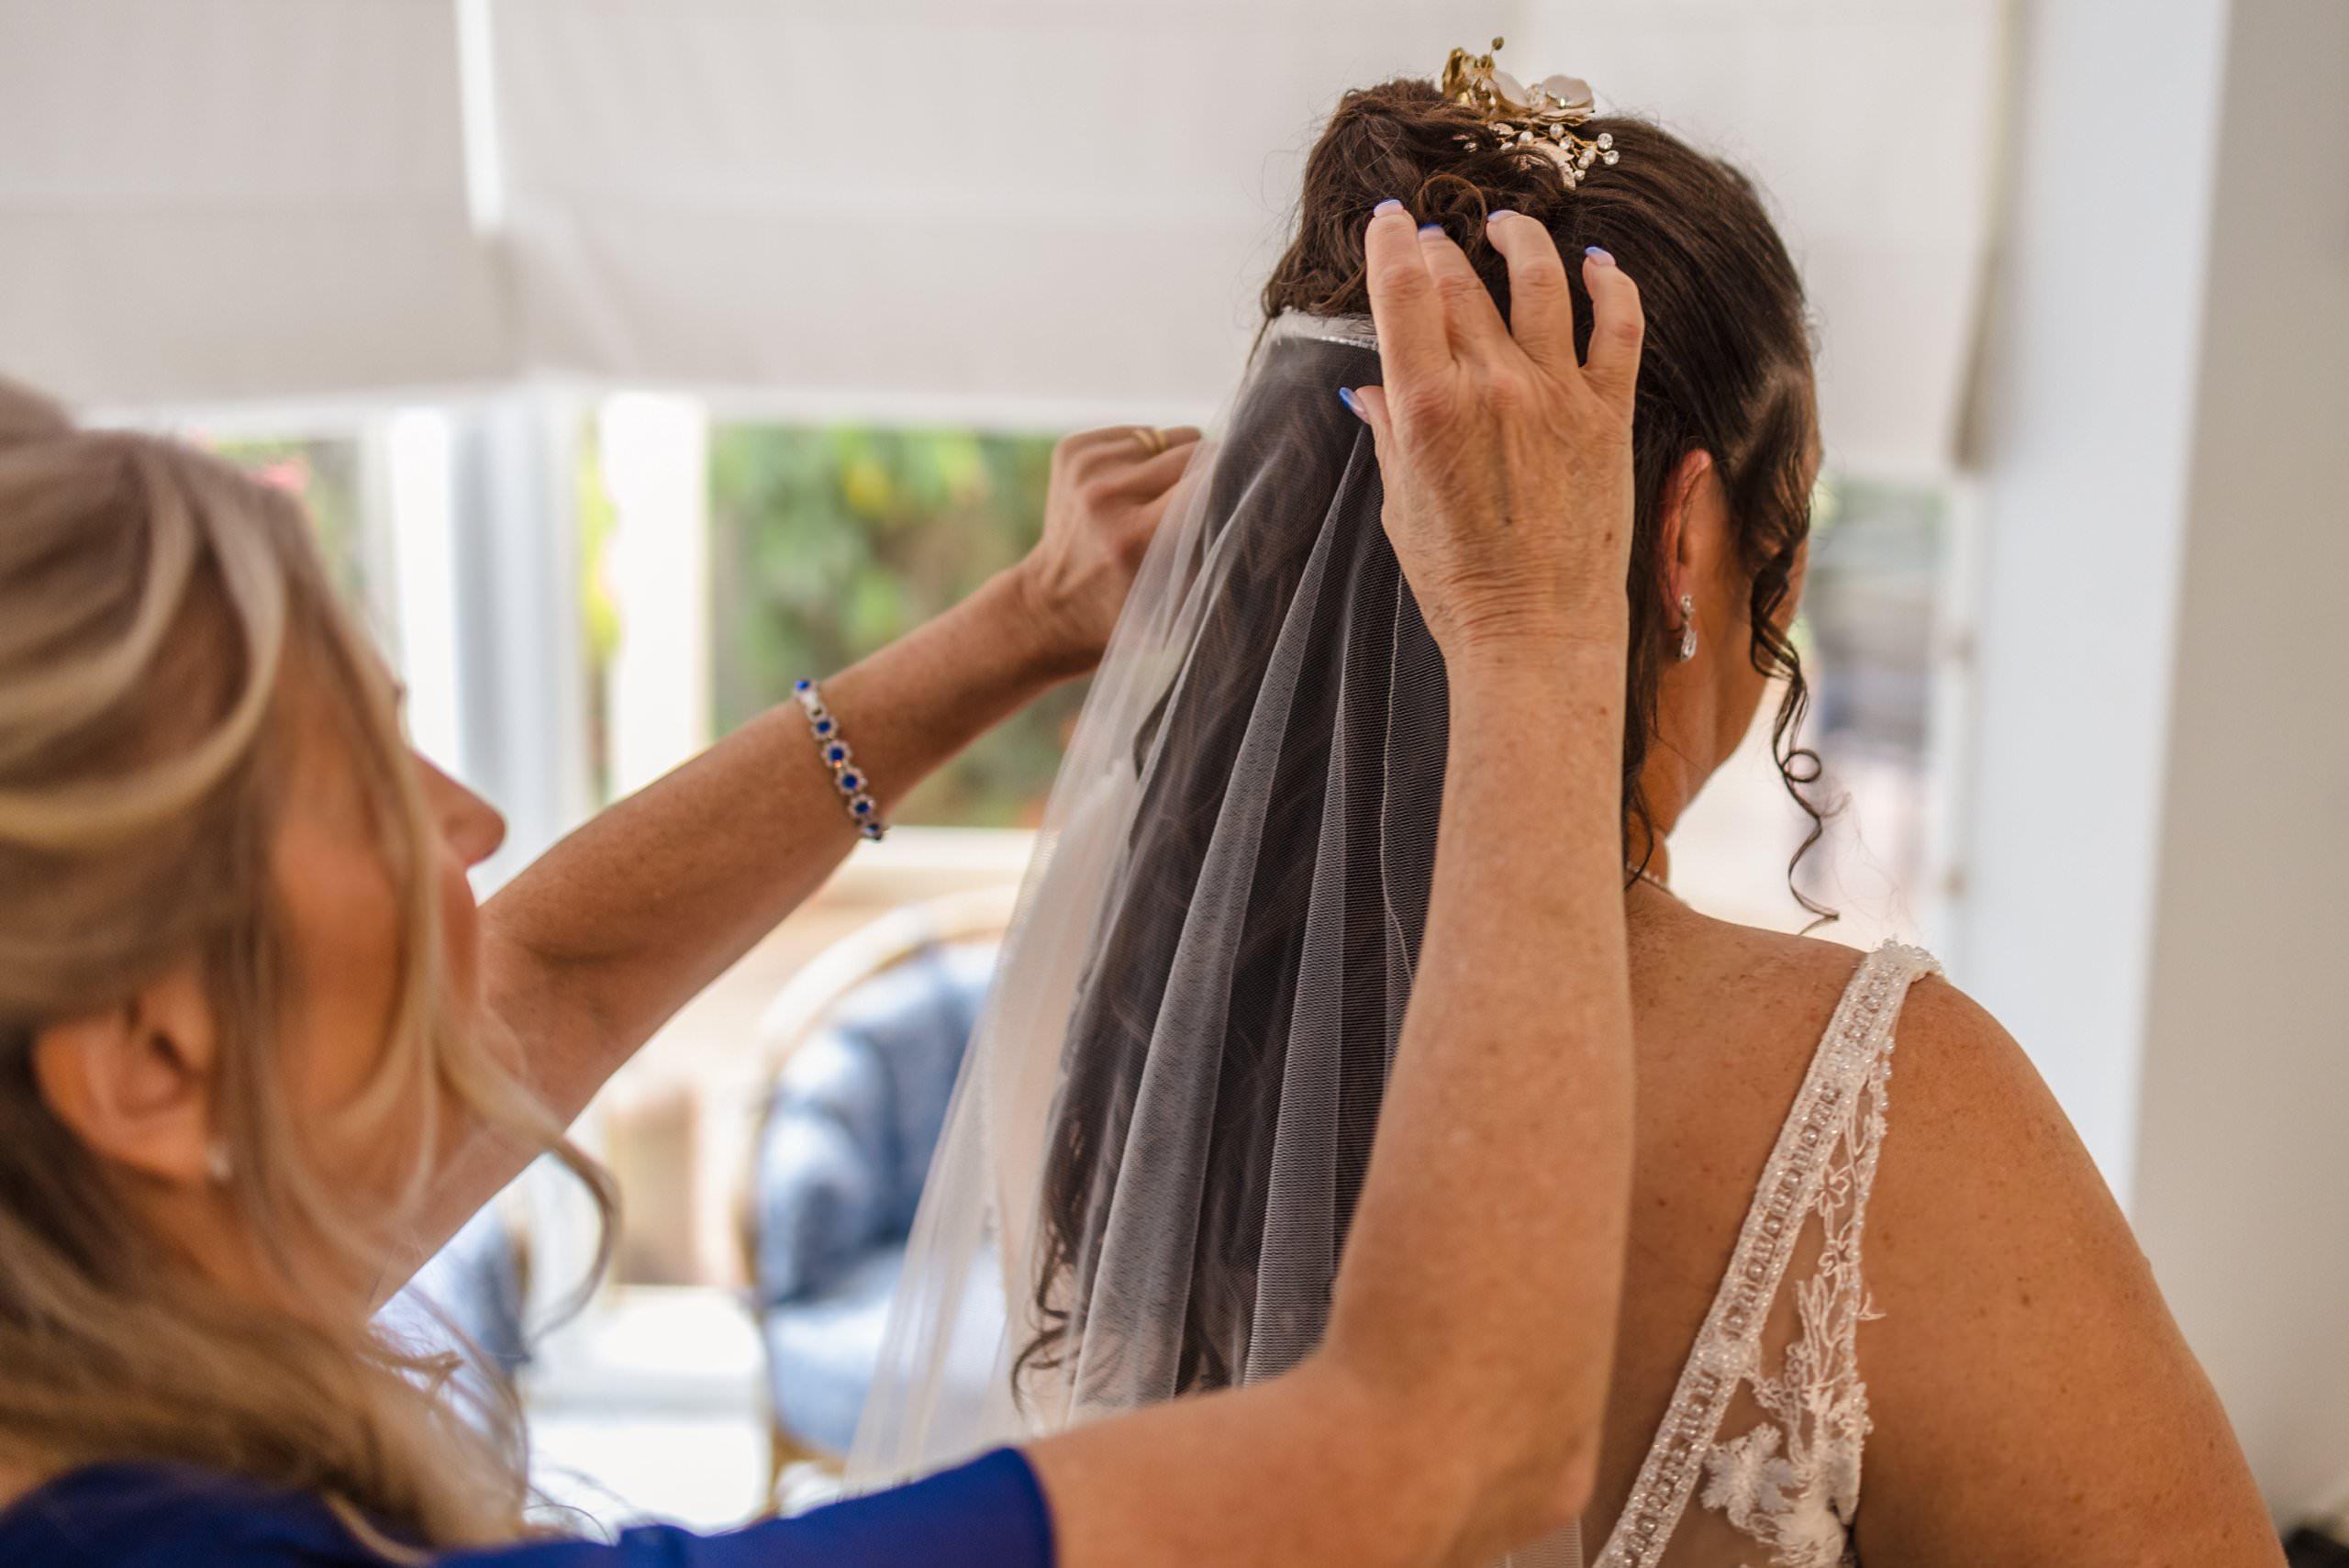 brides best friend putting veil on the bride